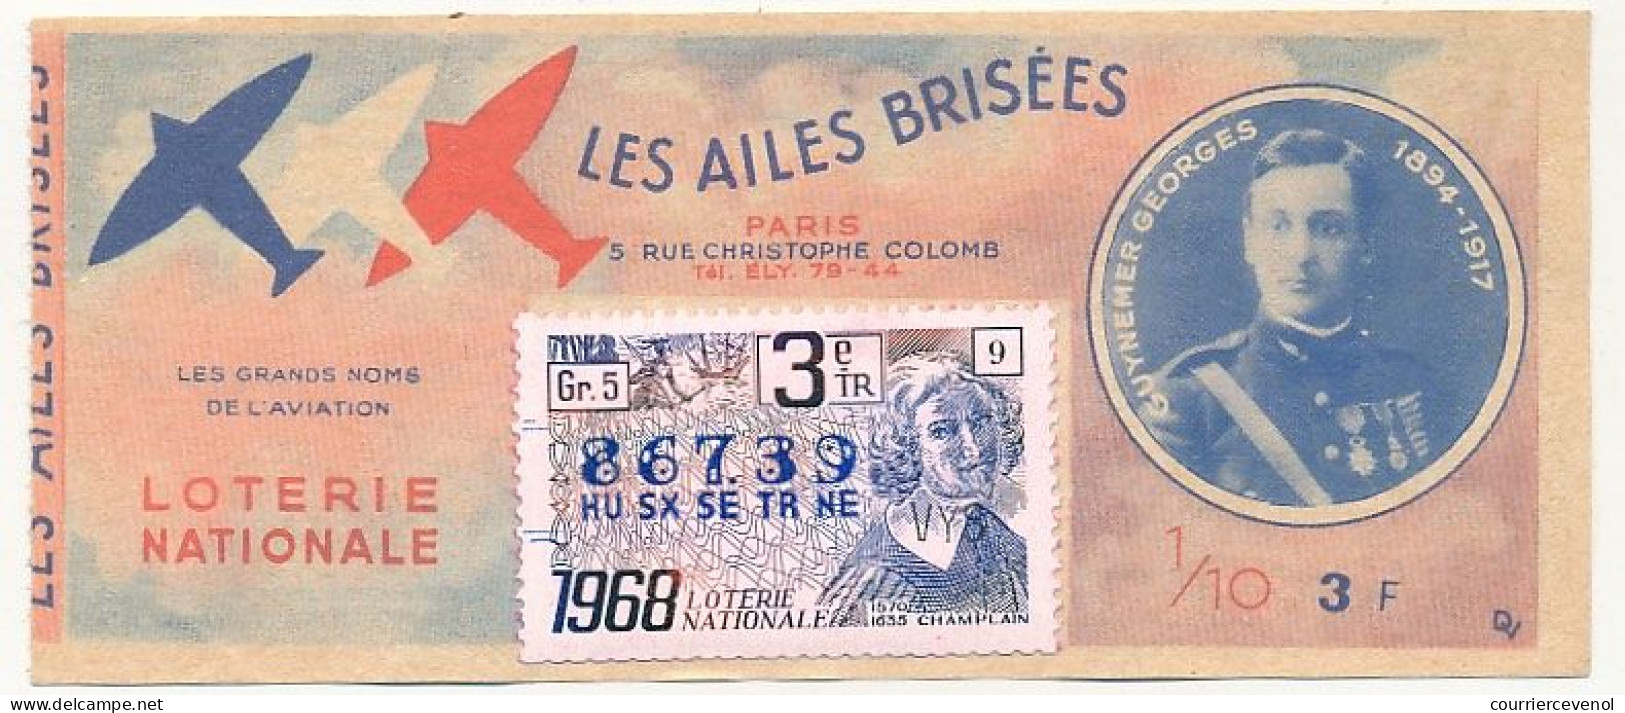 FRANCE - Loterie Nationale - 1/10ème - Les Ailes Brisées - Grands Noms De L'Aviation - Guynemer Georges - 3èm Tr 1968 - Lottery Tickets